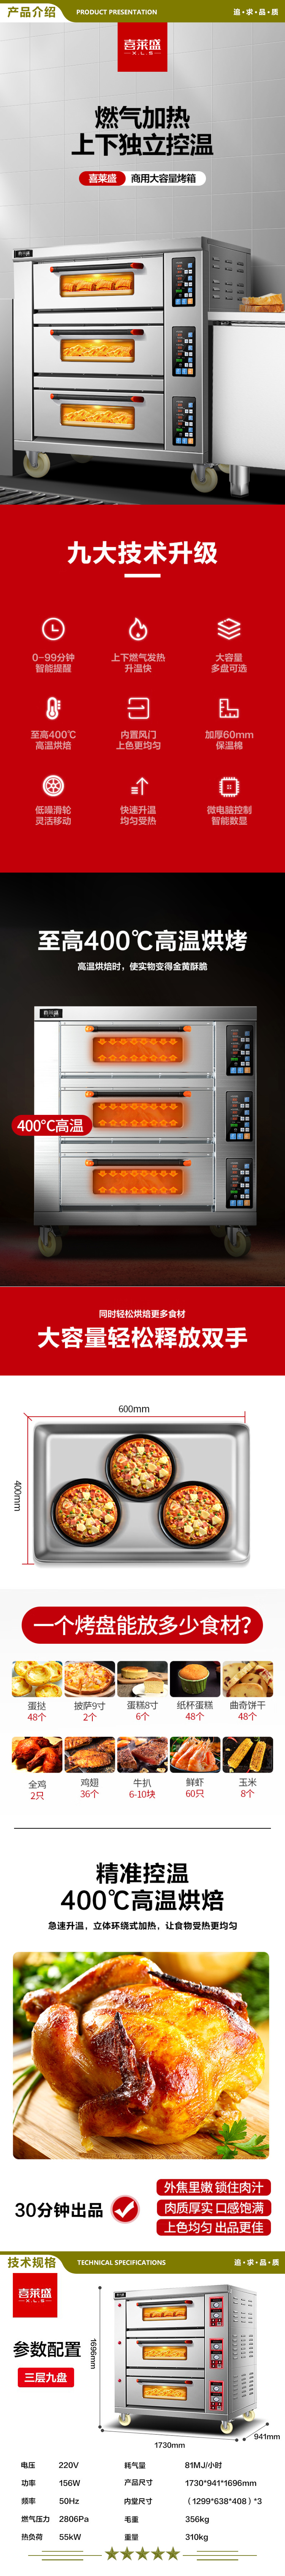 喜莱盛 XLS-YXD-309 烤箱商用大型披萨燃气烤炉 蛋糕面包月饼烤鱼电烤箱三层九盘  2.jpg